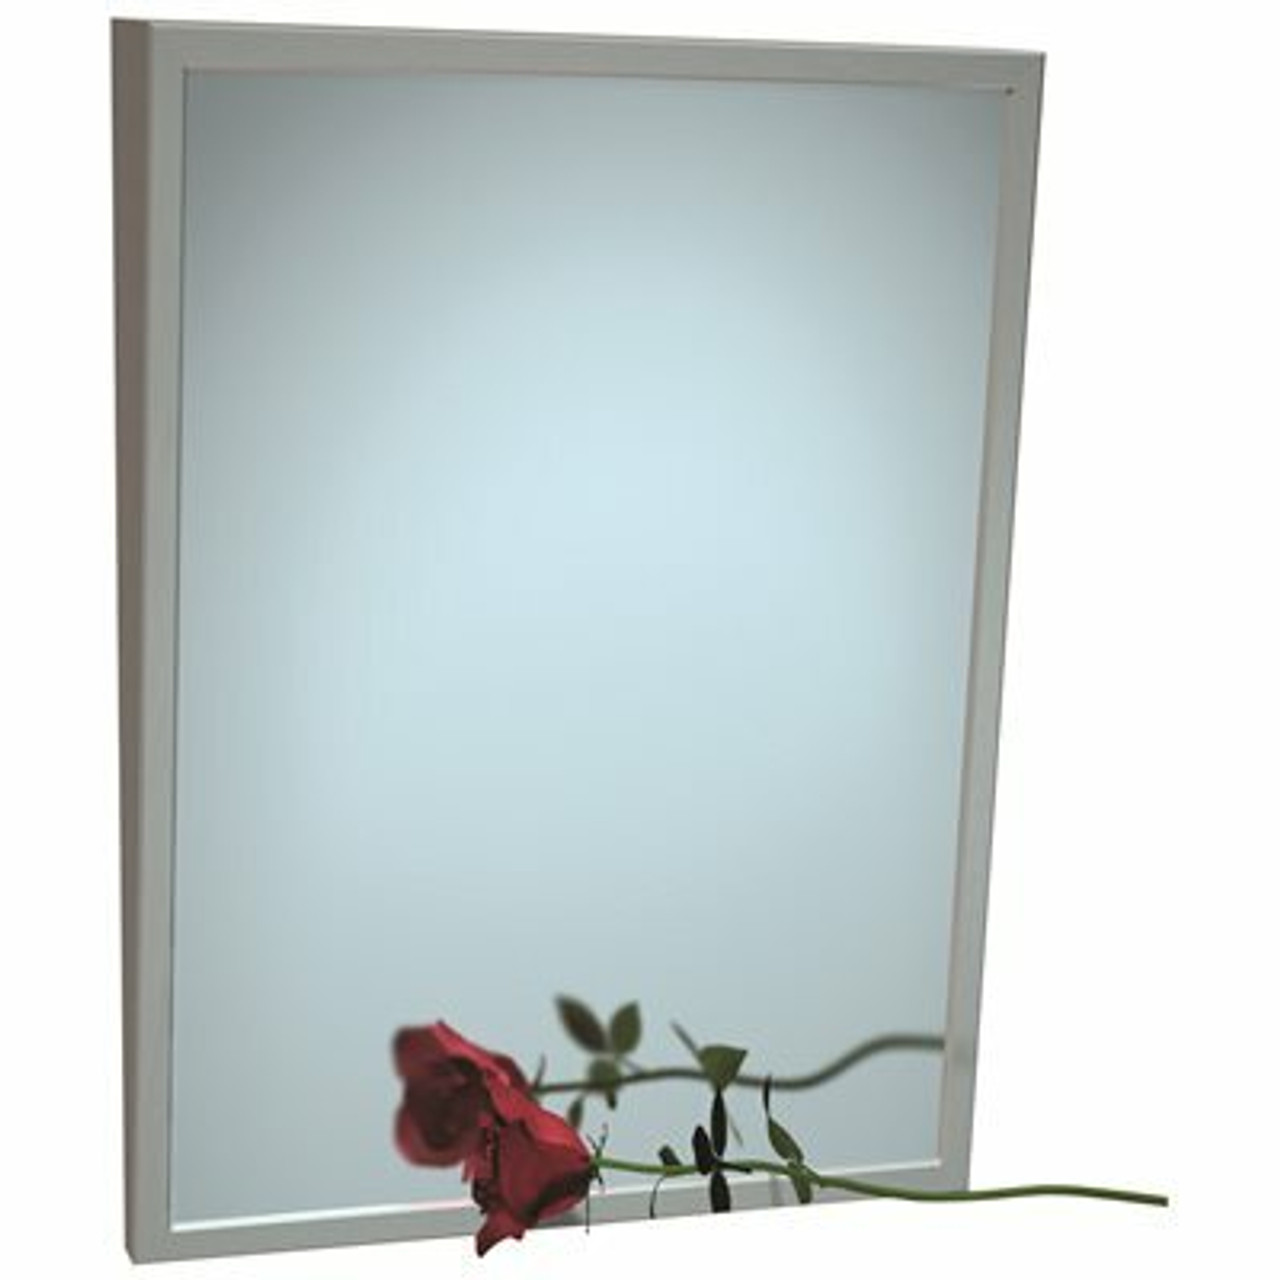 American Specialties Framed Tilt Mirror